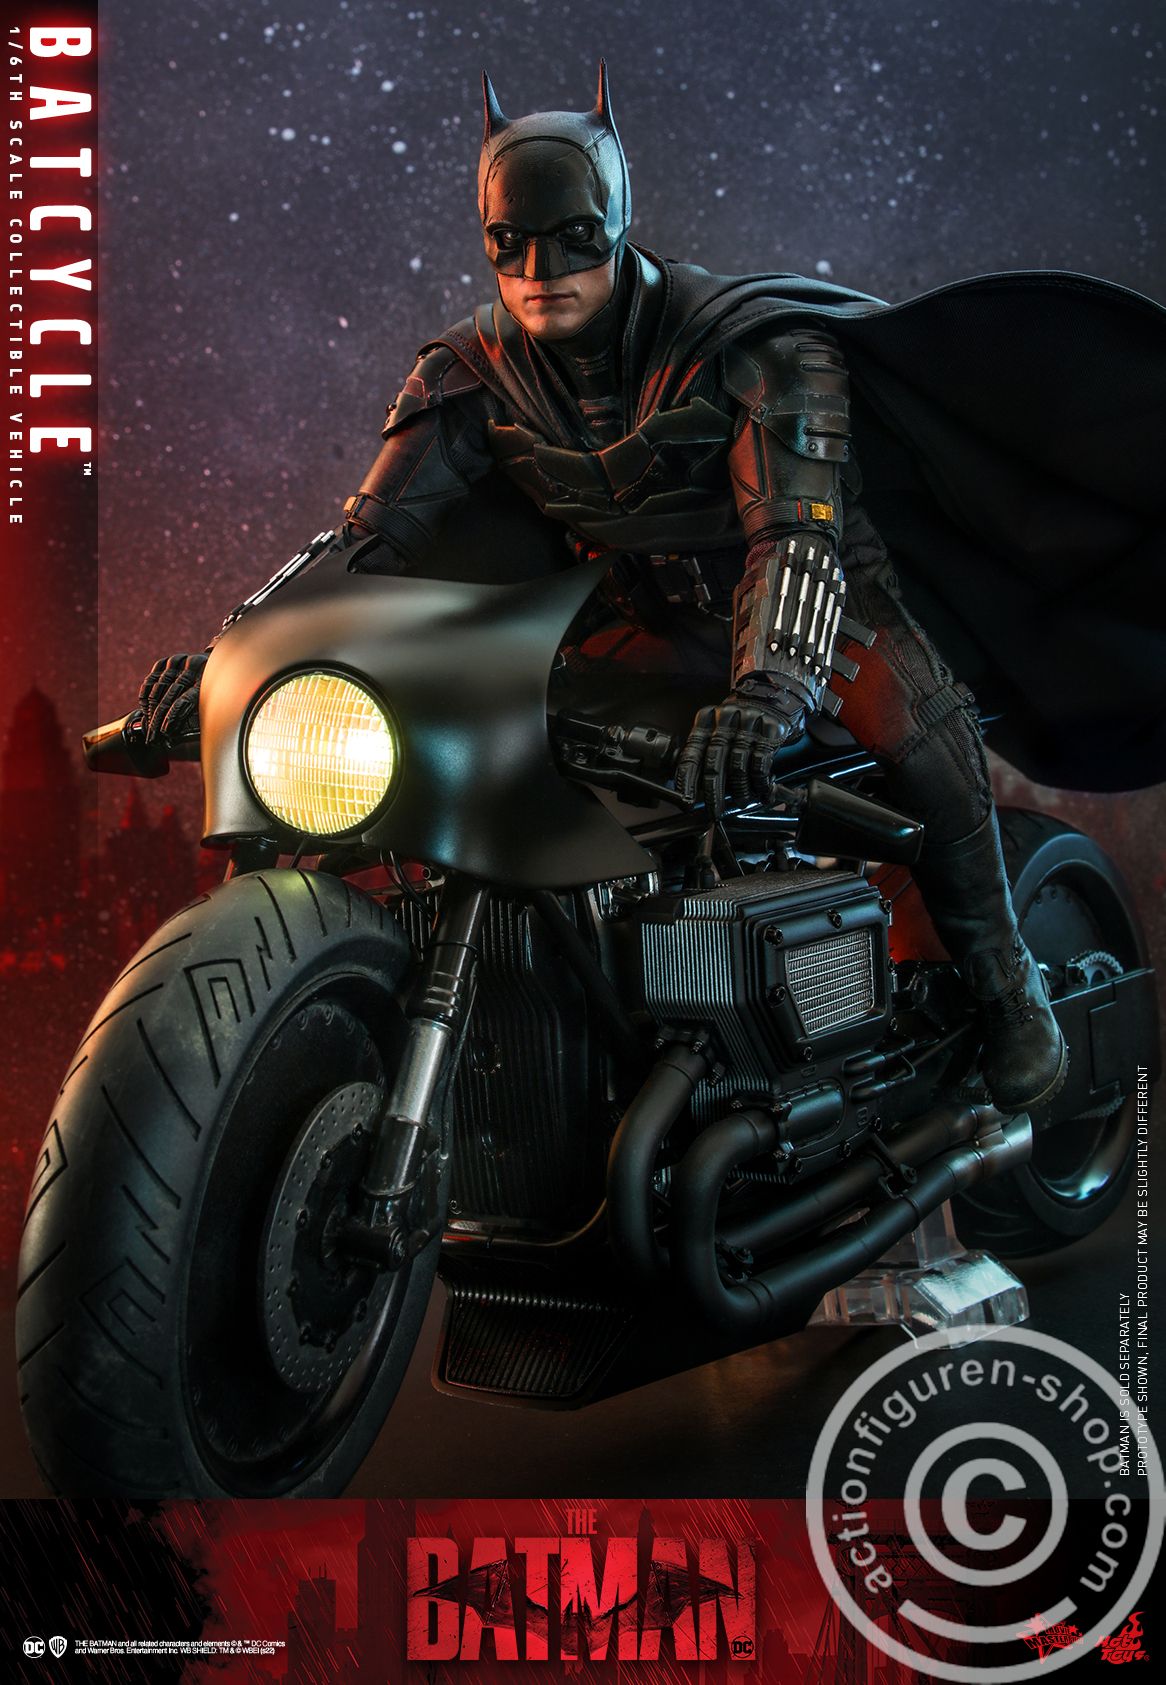 The Batman - Batcycle